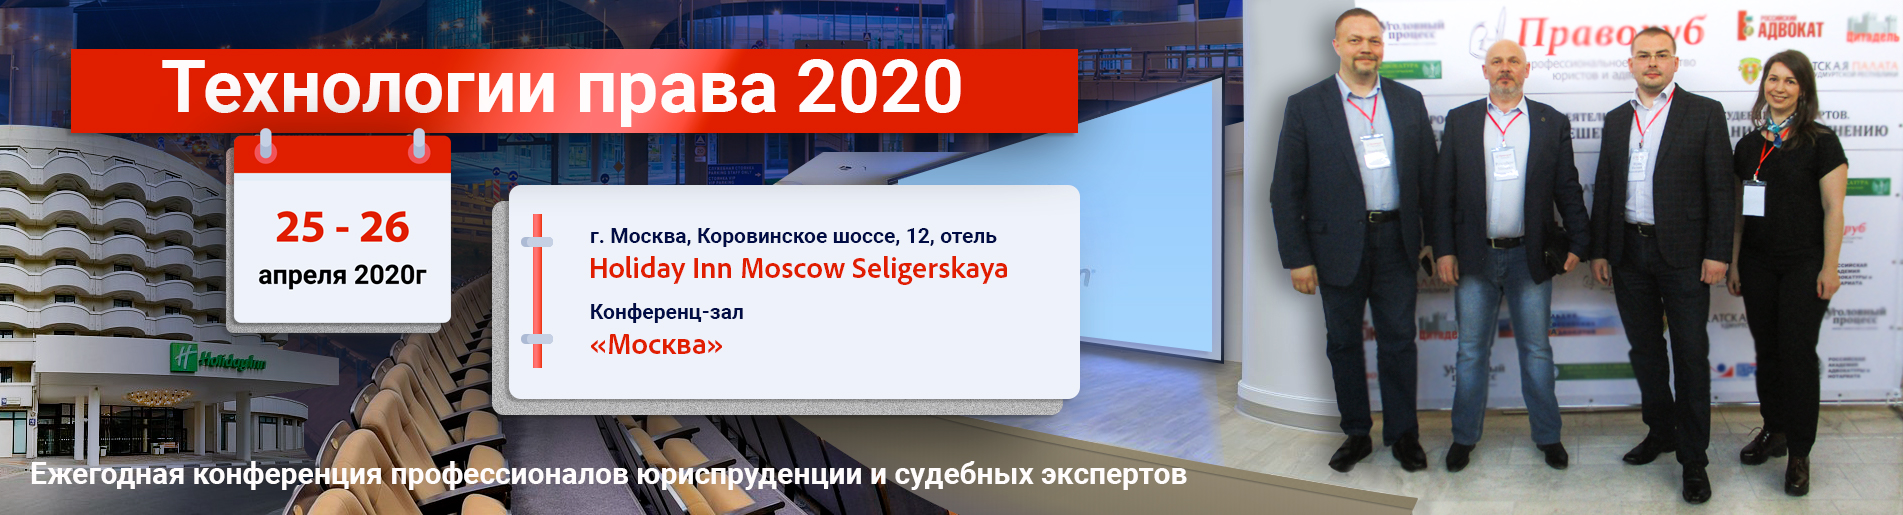         "  2020"